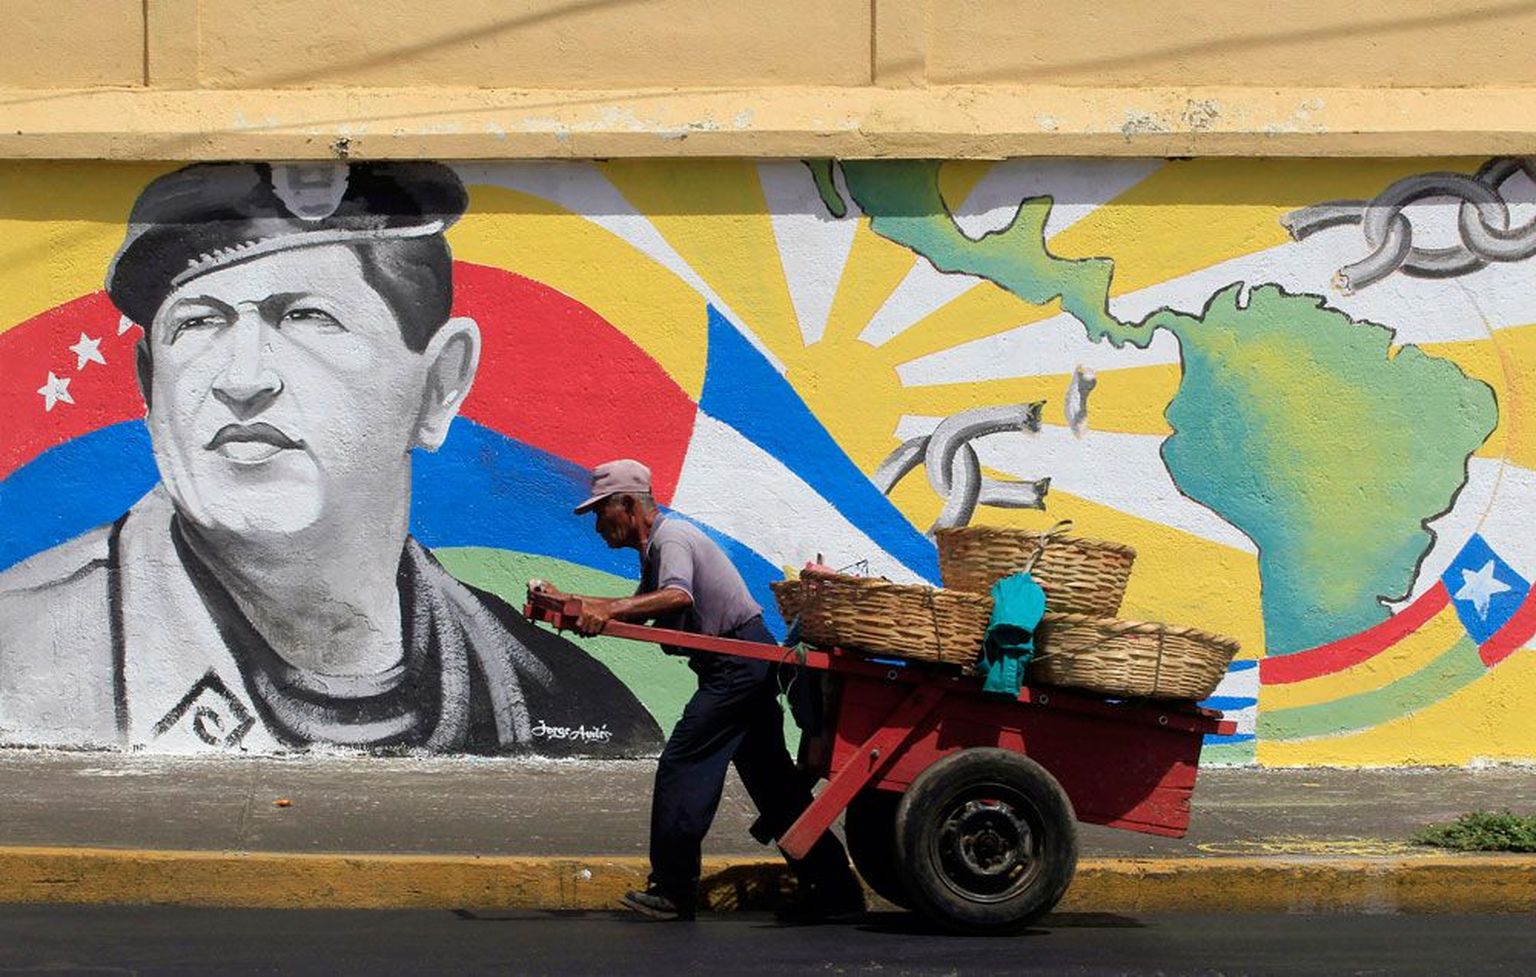 Hugo Chávez, kes valitses kauem kui ükski teine demokraatlikult valitud riigipea läänepoolkeral, elab Caracase tänavapildis edasi ka pärast oma surma.